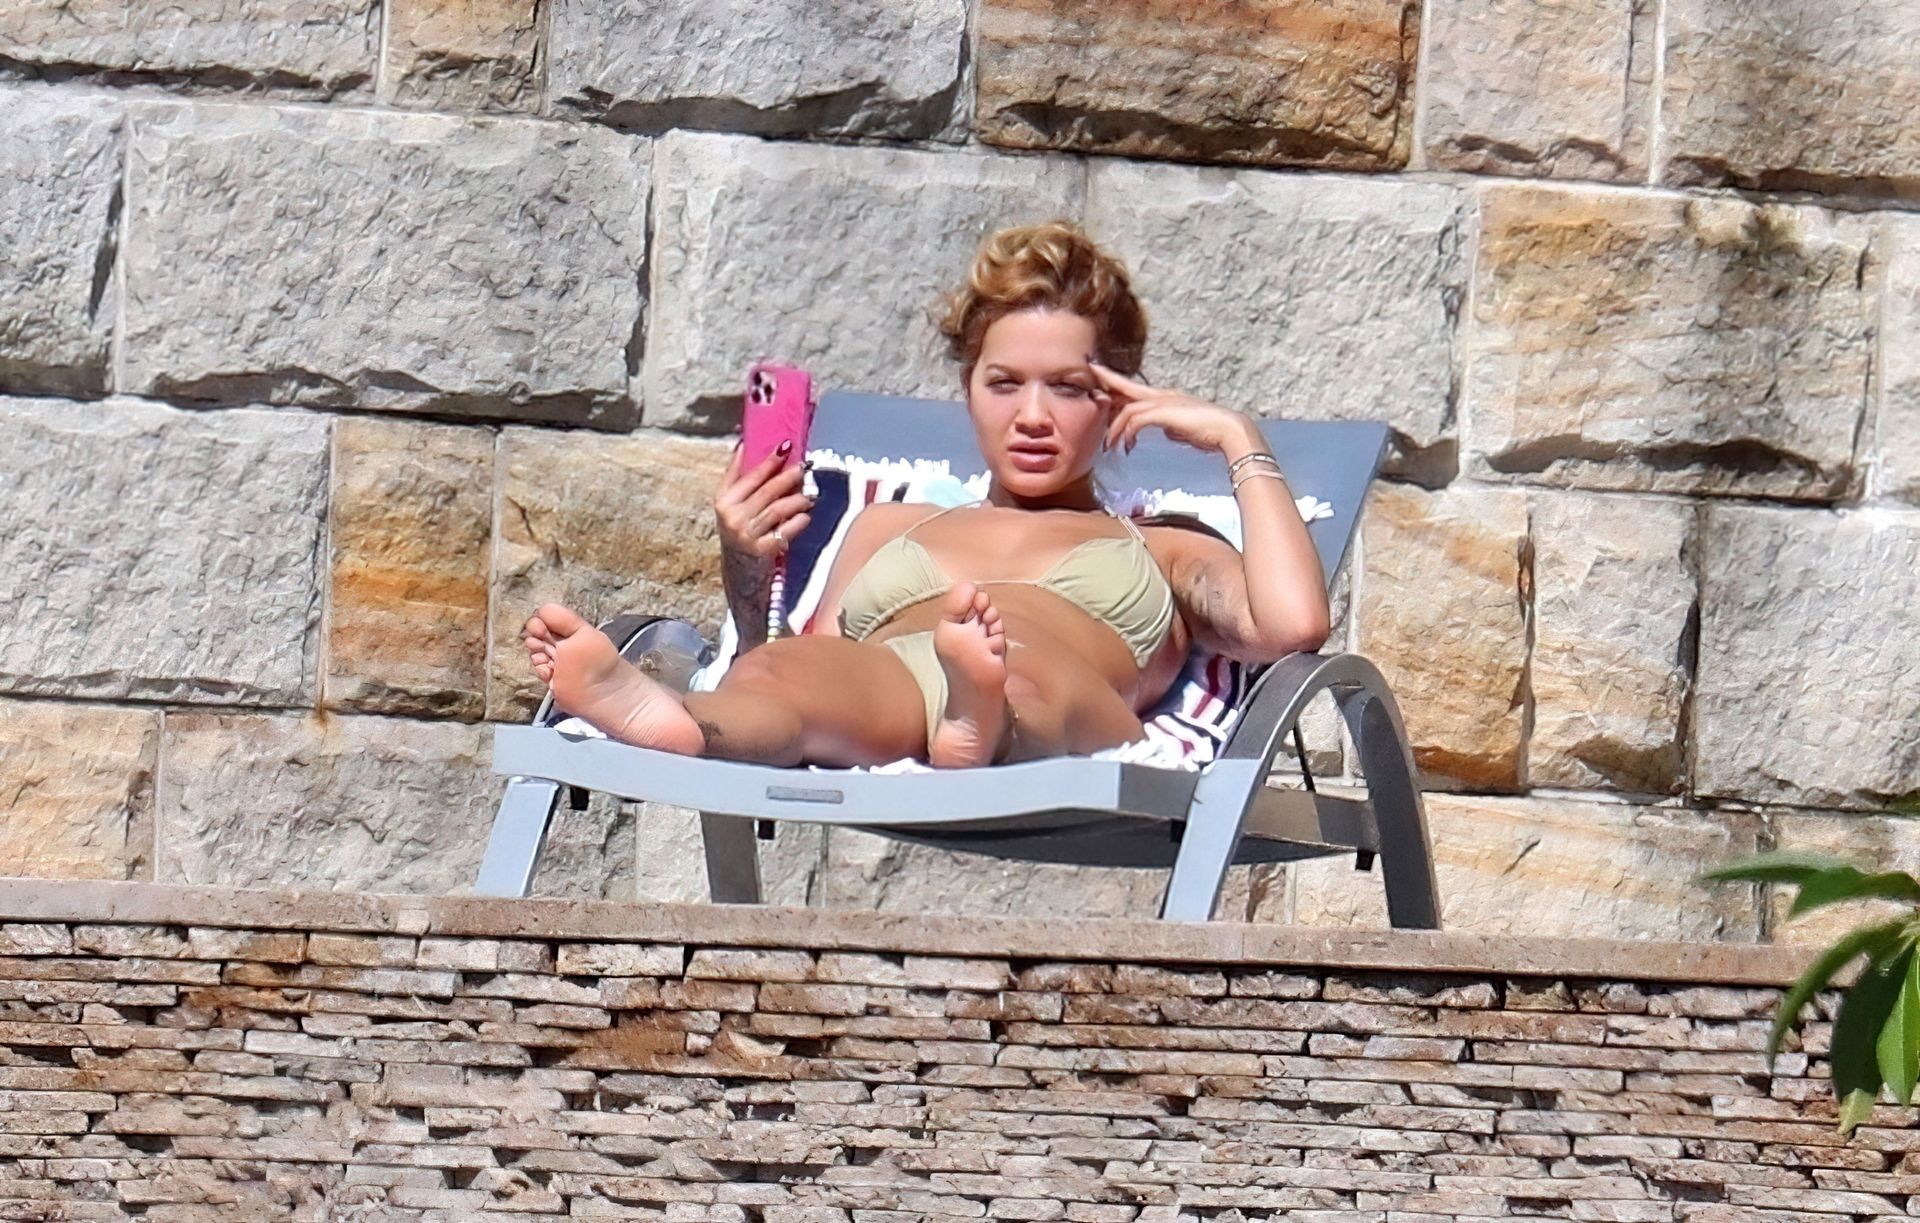 Rita Ora Displays Her Nude Tits and Sexy Bikini Body in Sydney (72 Photos)